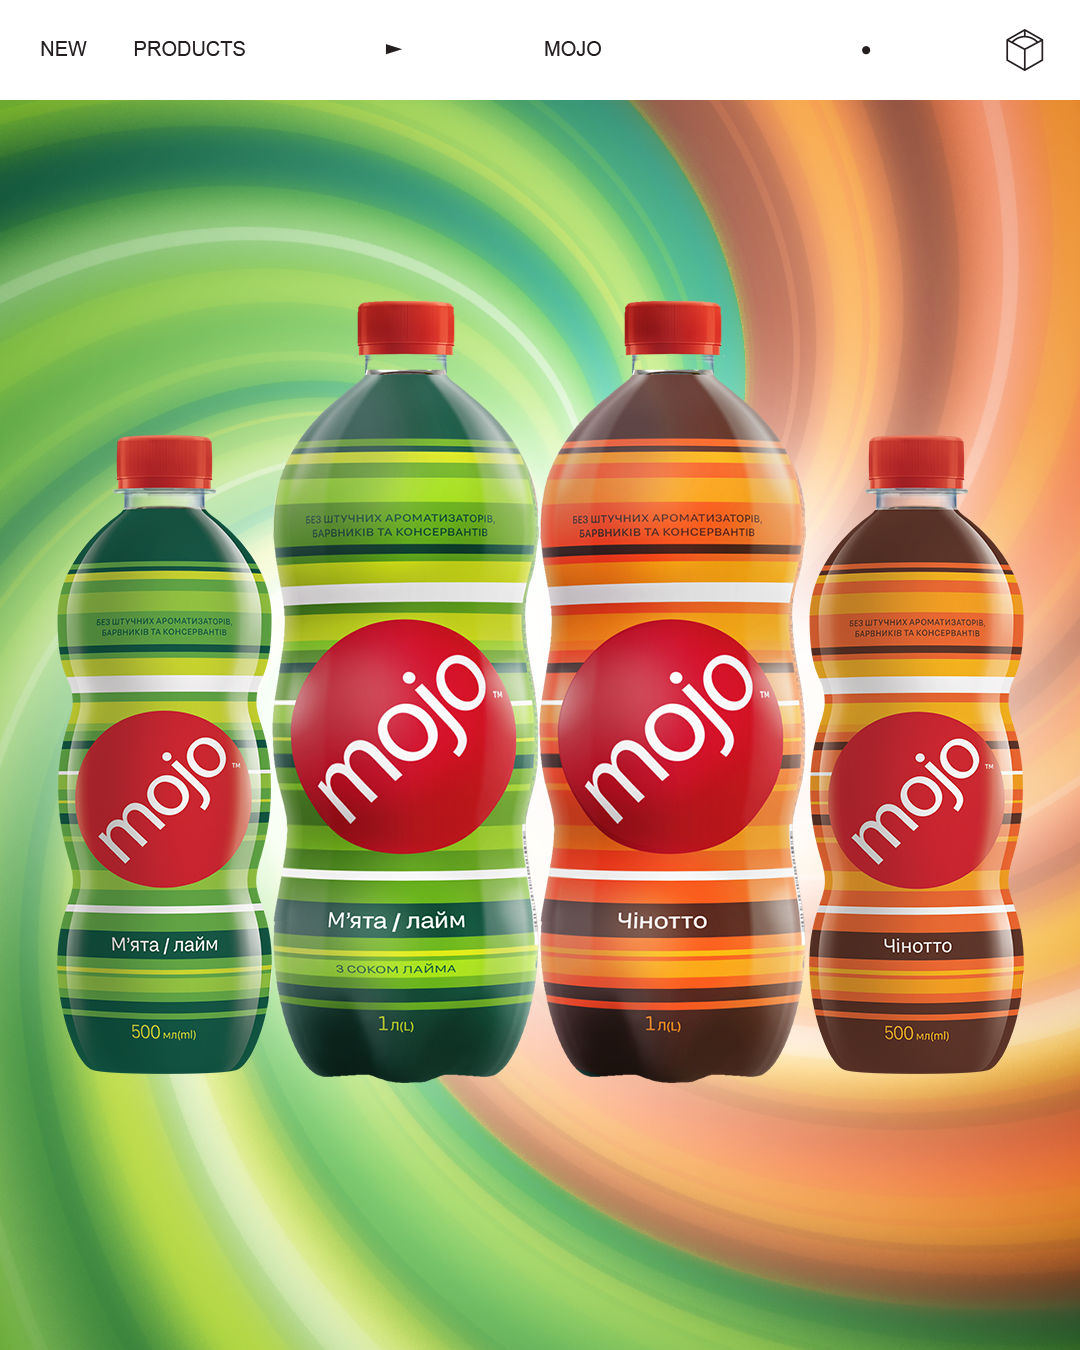 Ще більше смаку: MOJO тепер доступний у пластикових пляшках 0,5 л і 1 л.